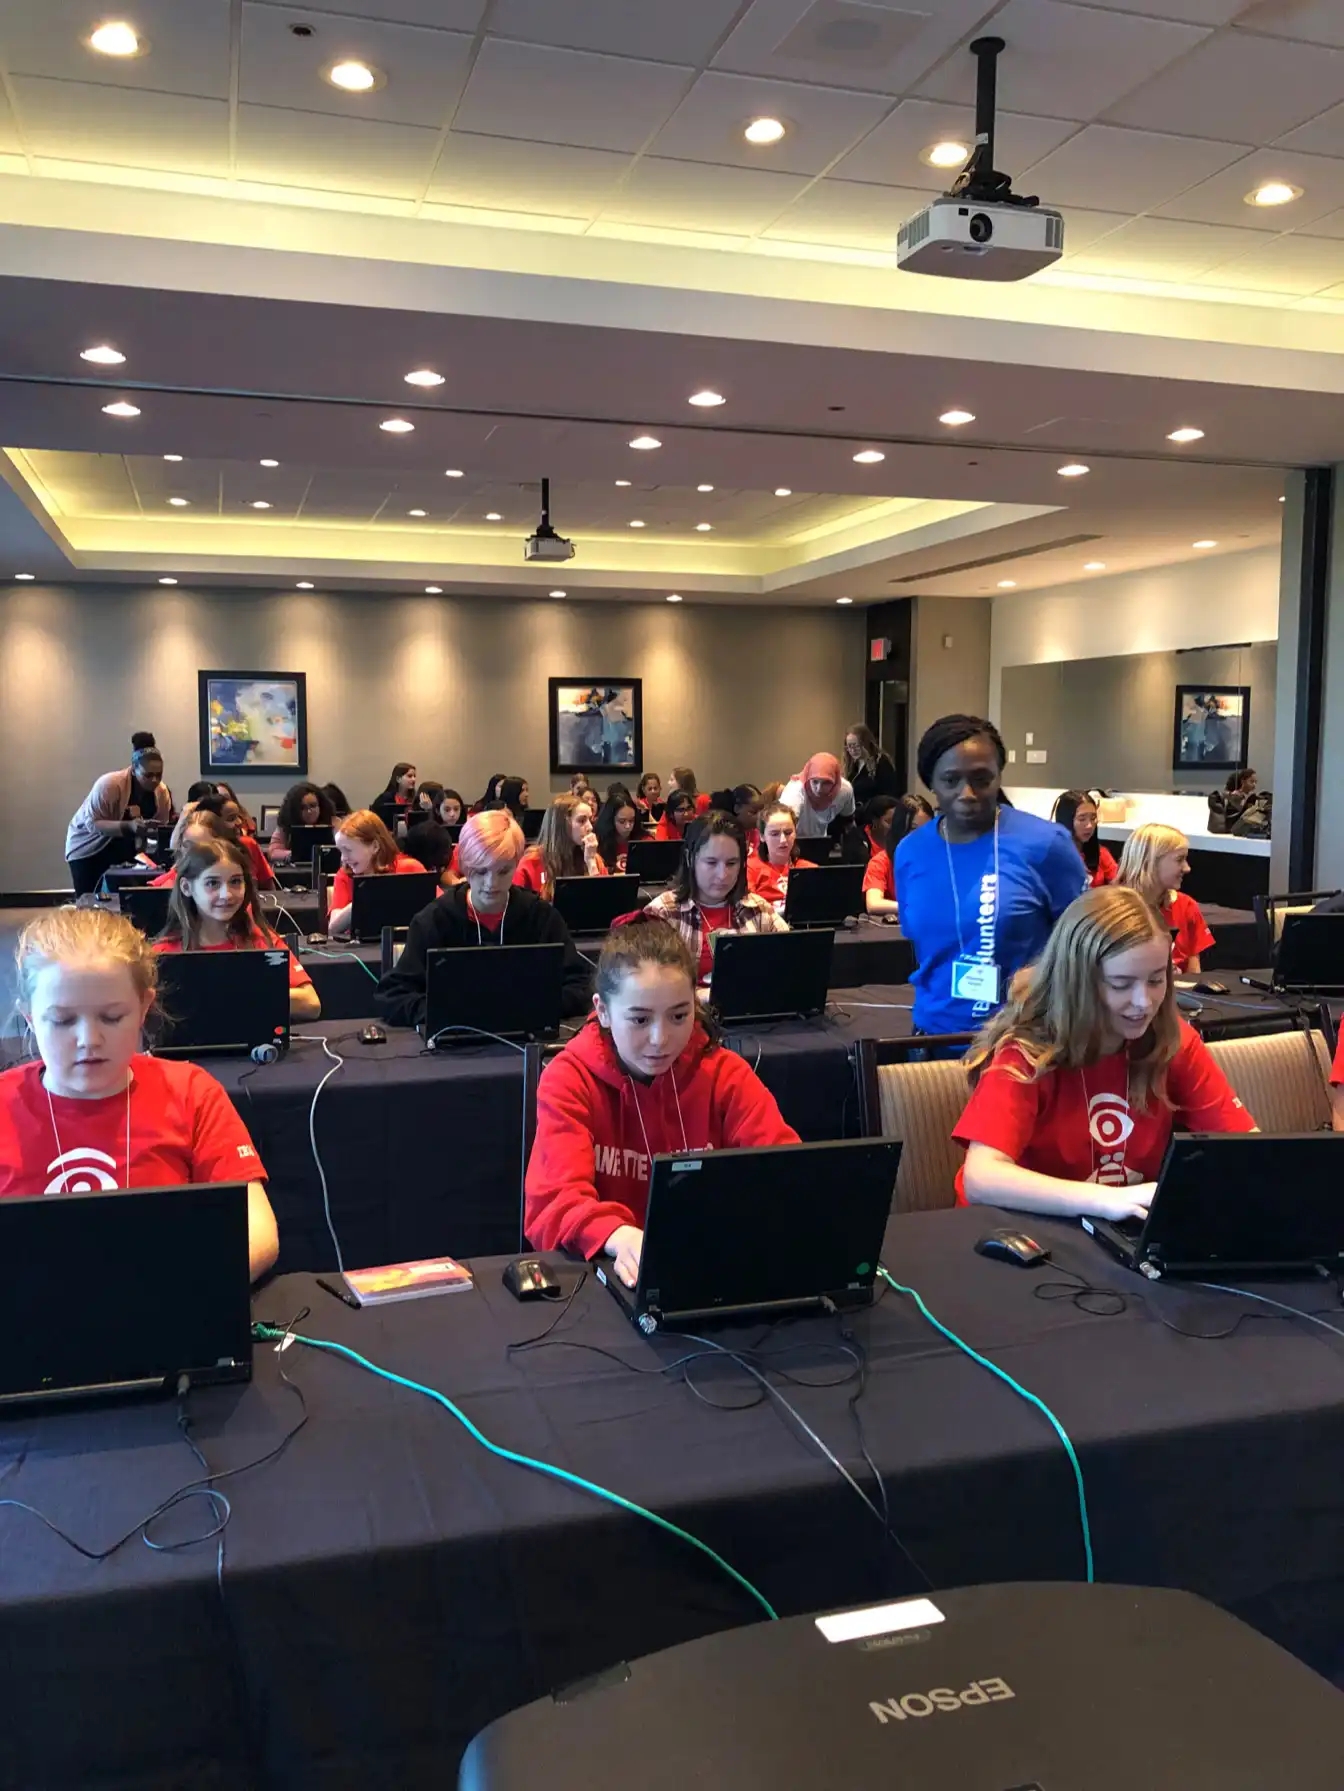 Salle de classe avec des participantes au CyberDay4Girls travaillant sur des ordinateurs portables et des mentors aidant les élèves.